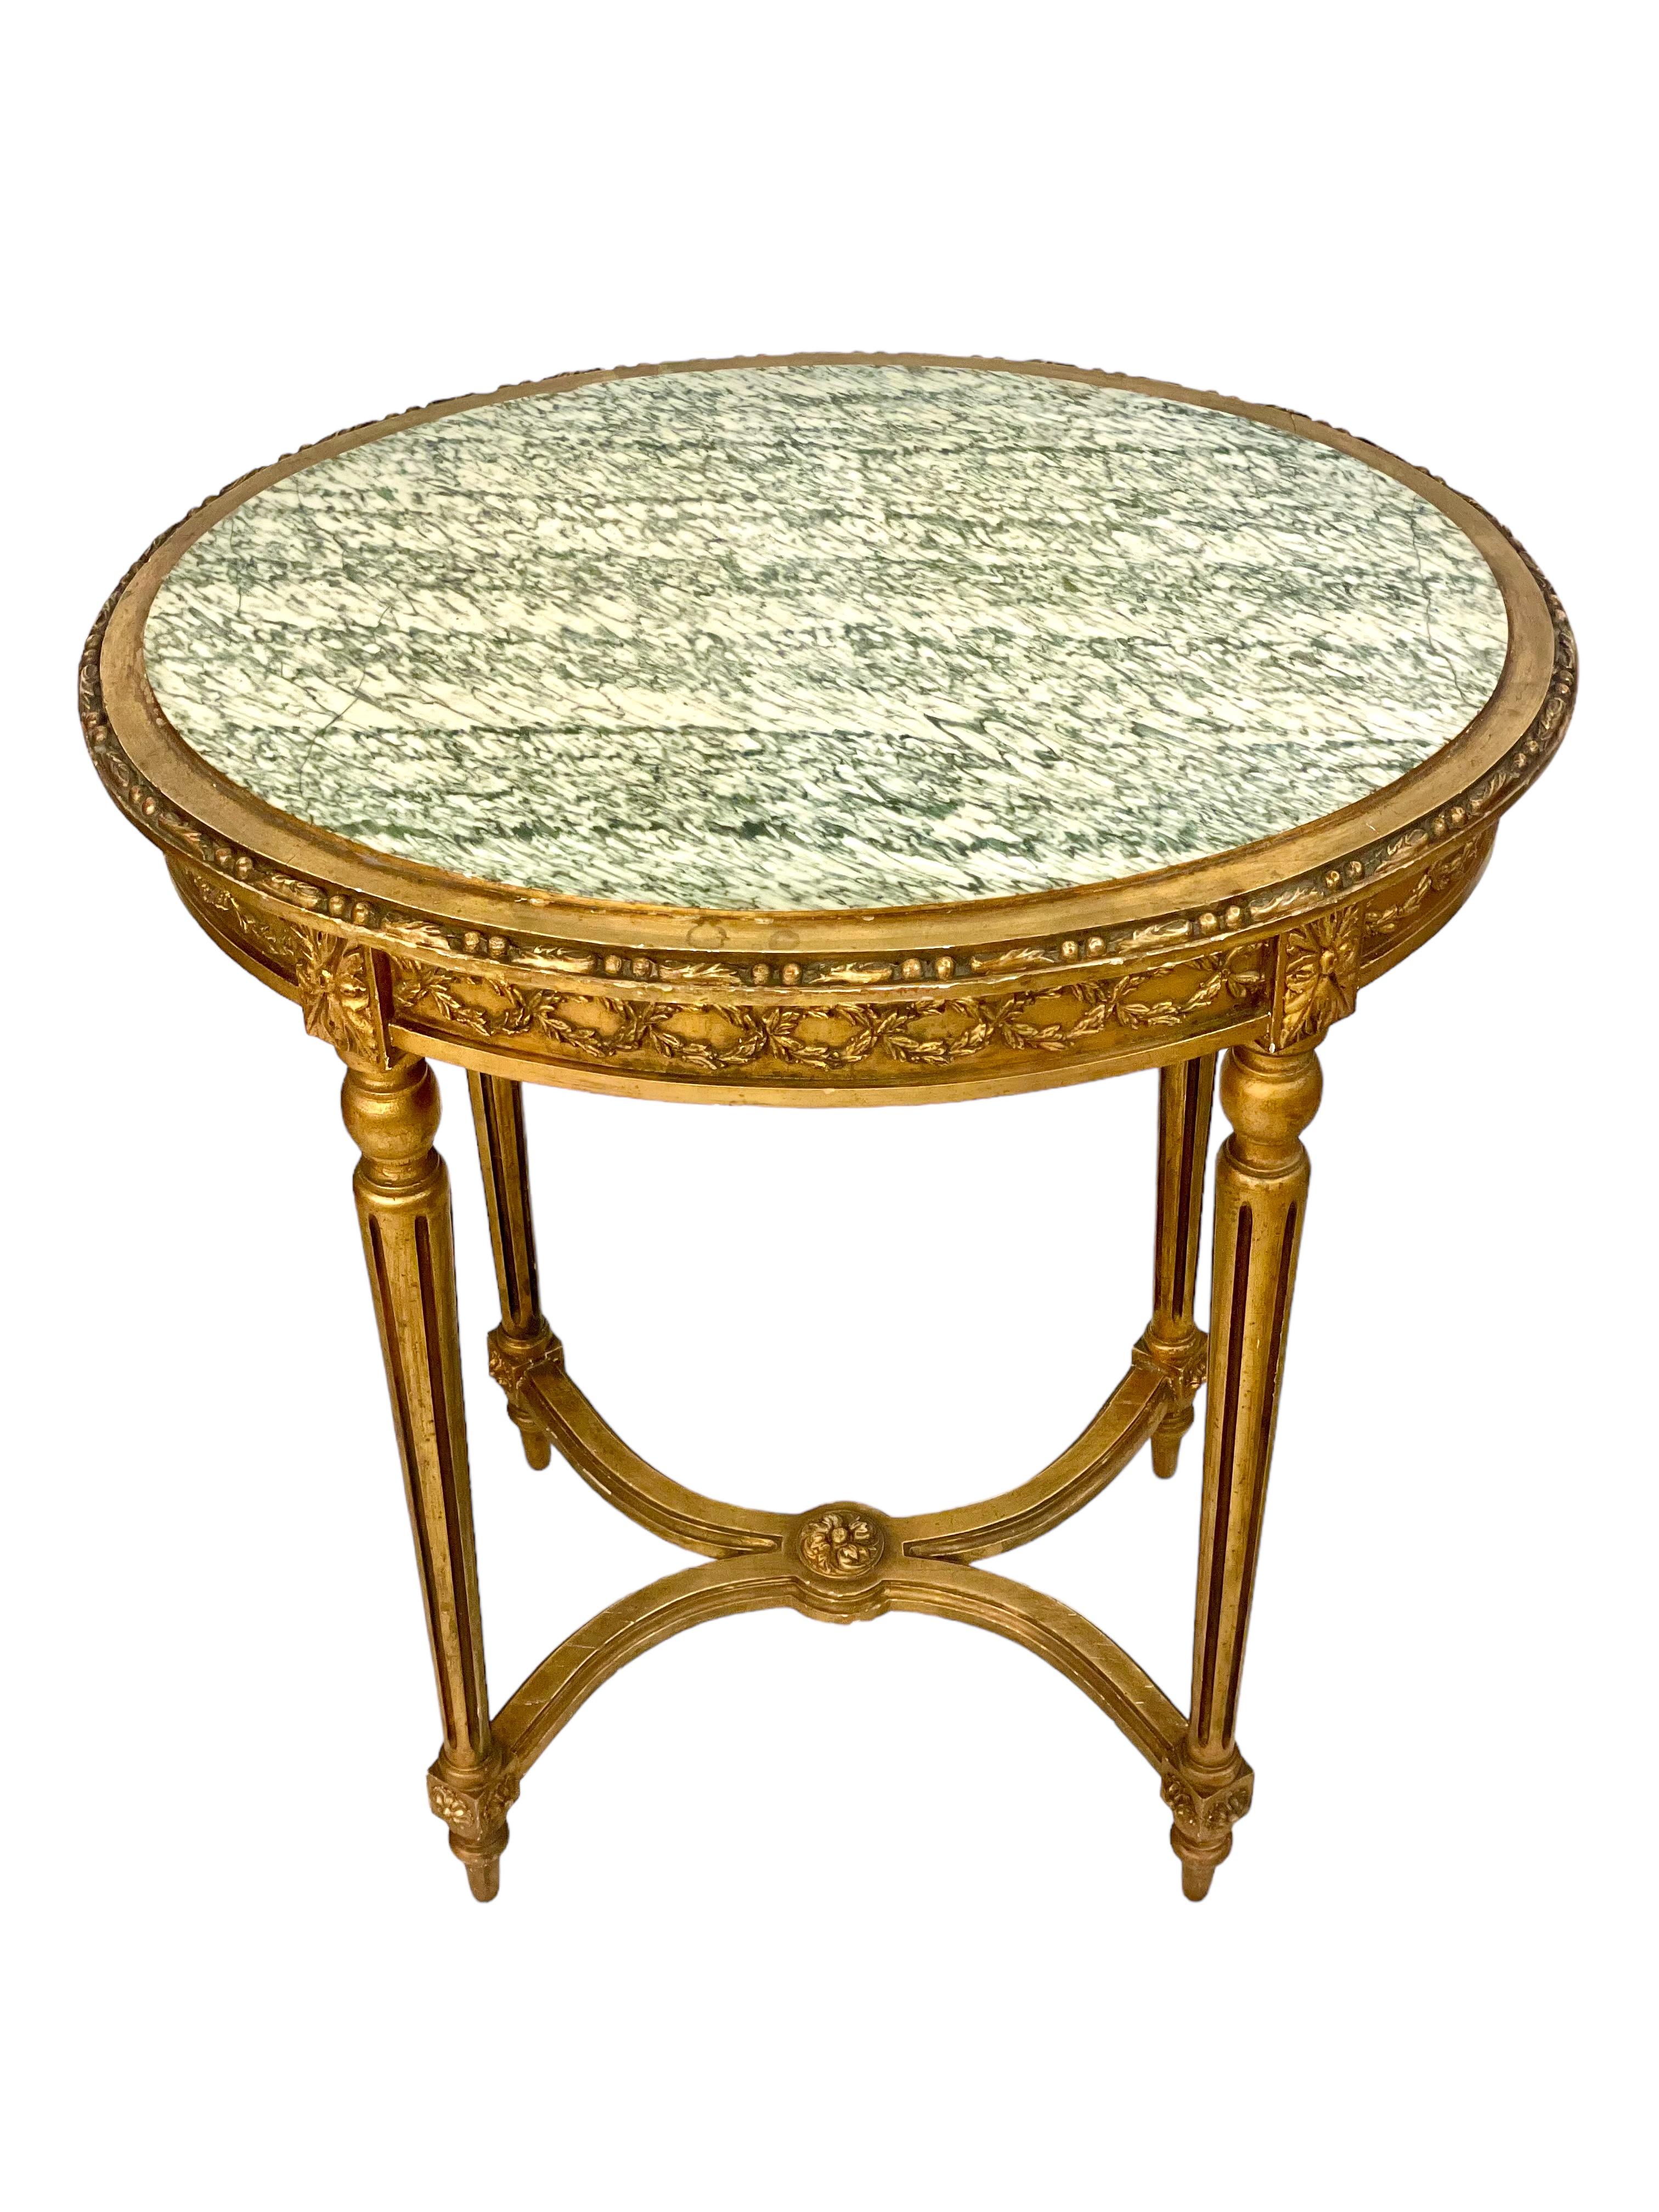 Très décorative table de centre ou d'appoint de style Louis XVI Napoléon III en bois sculpté et doré, avec un plateau ovale en marbre veiné gris-vert. Cette jolie petite table date du XIXe siècle et présente d'abondantes et magnifiques sculptures